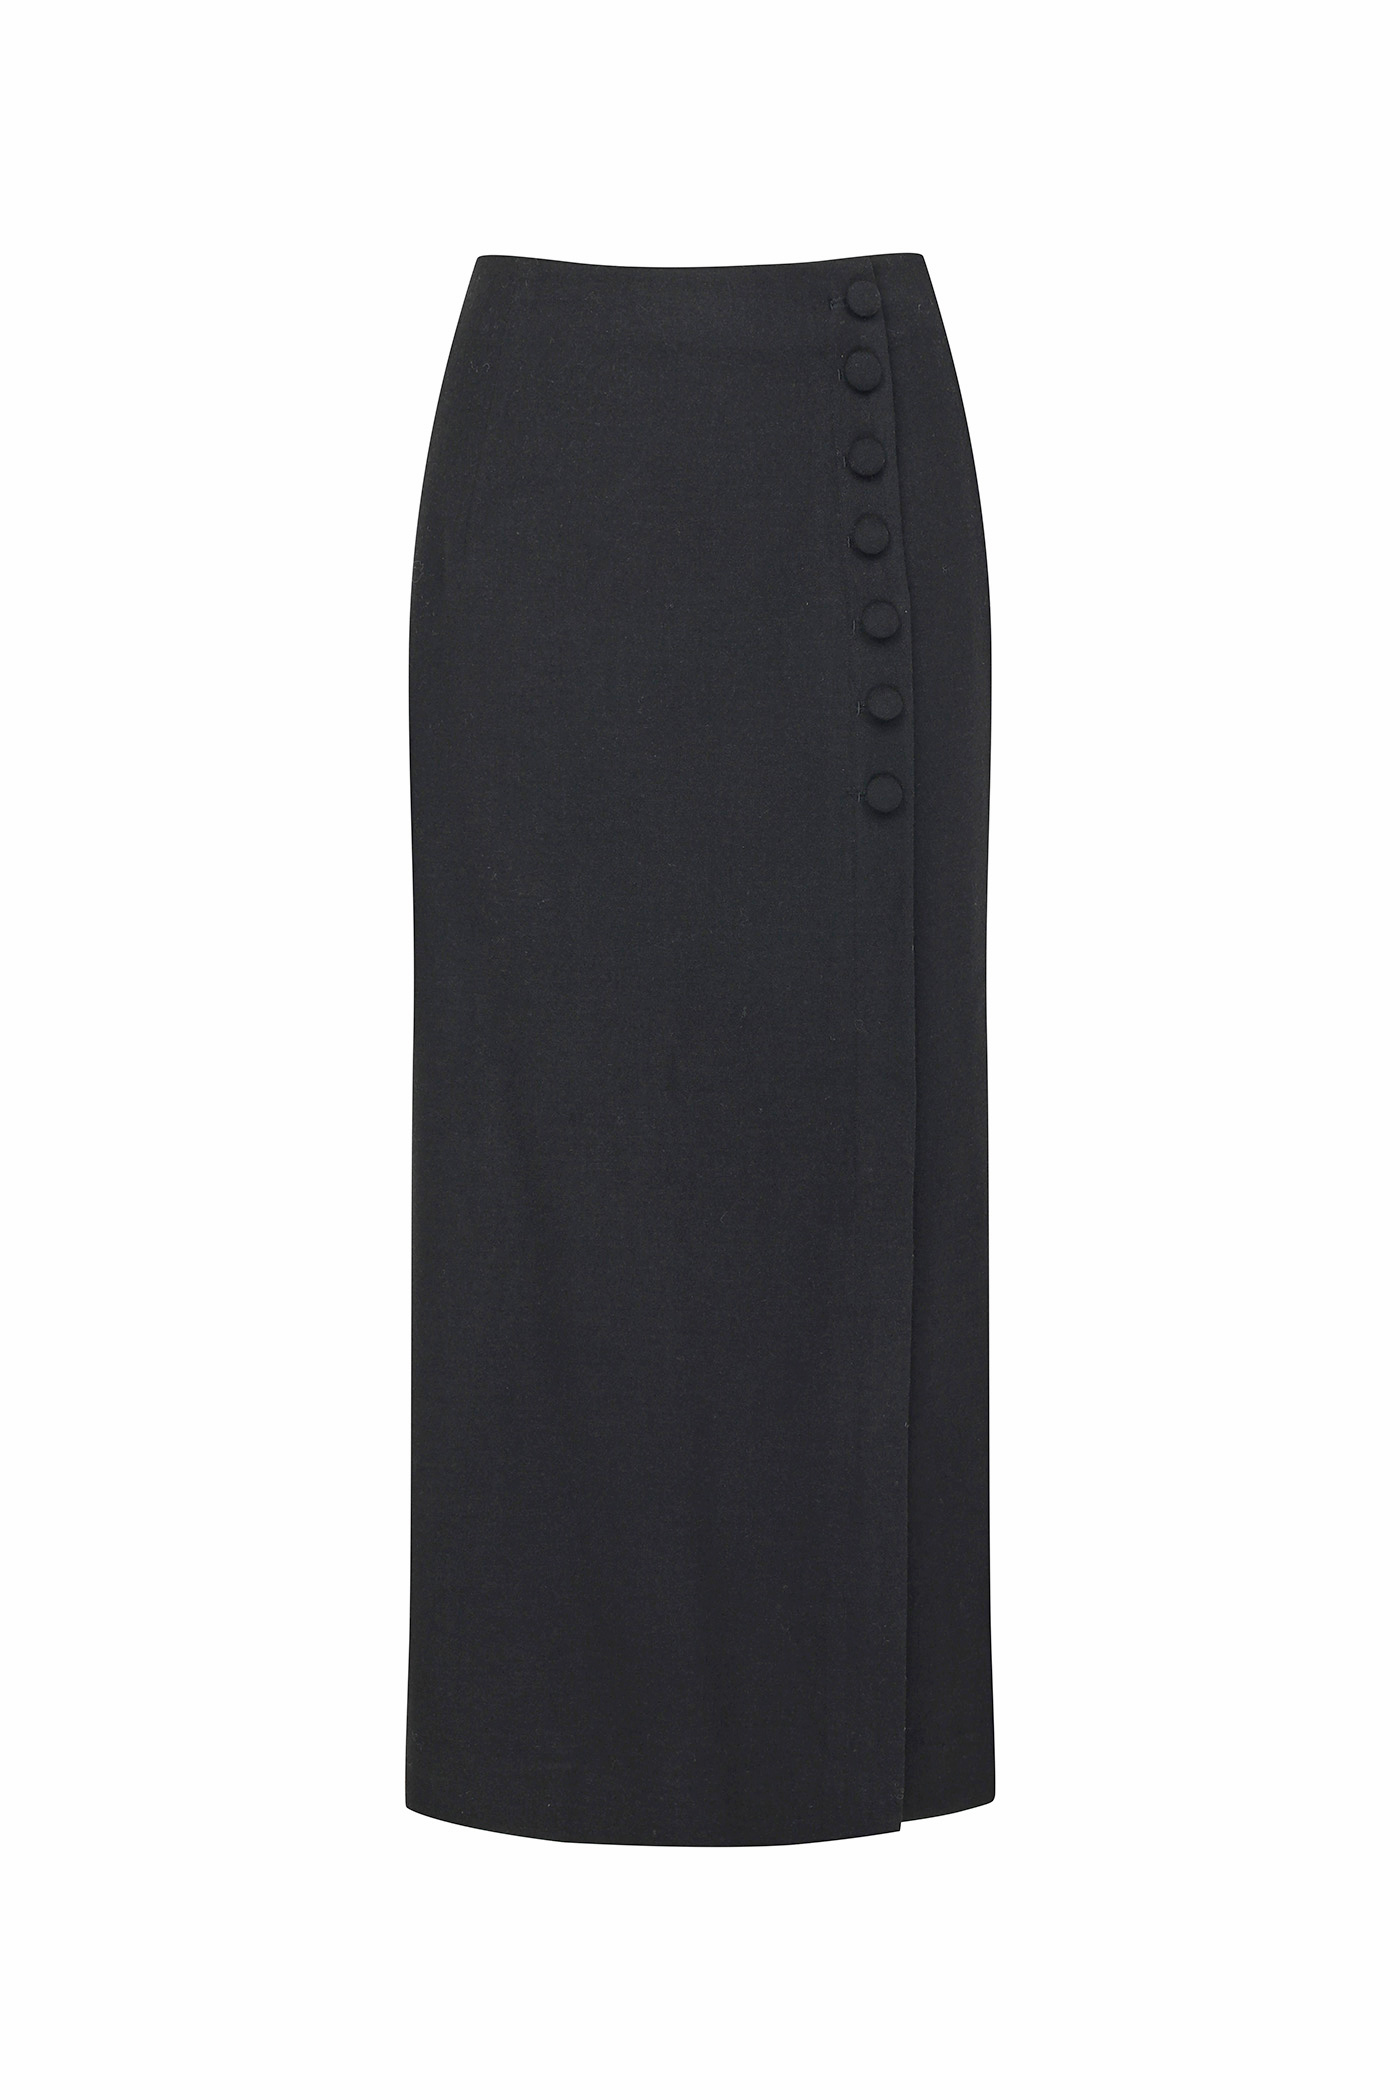 [SAMPLE]Button Slit Skirt[LMBBAUSK203]-Black